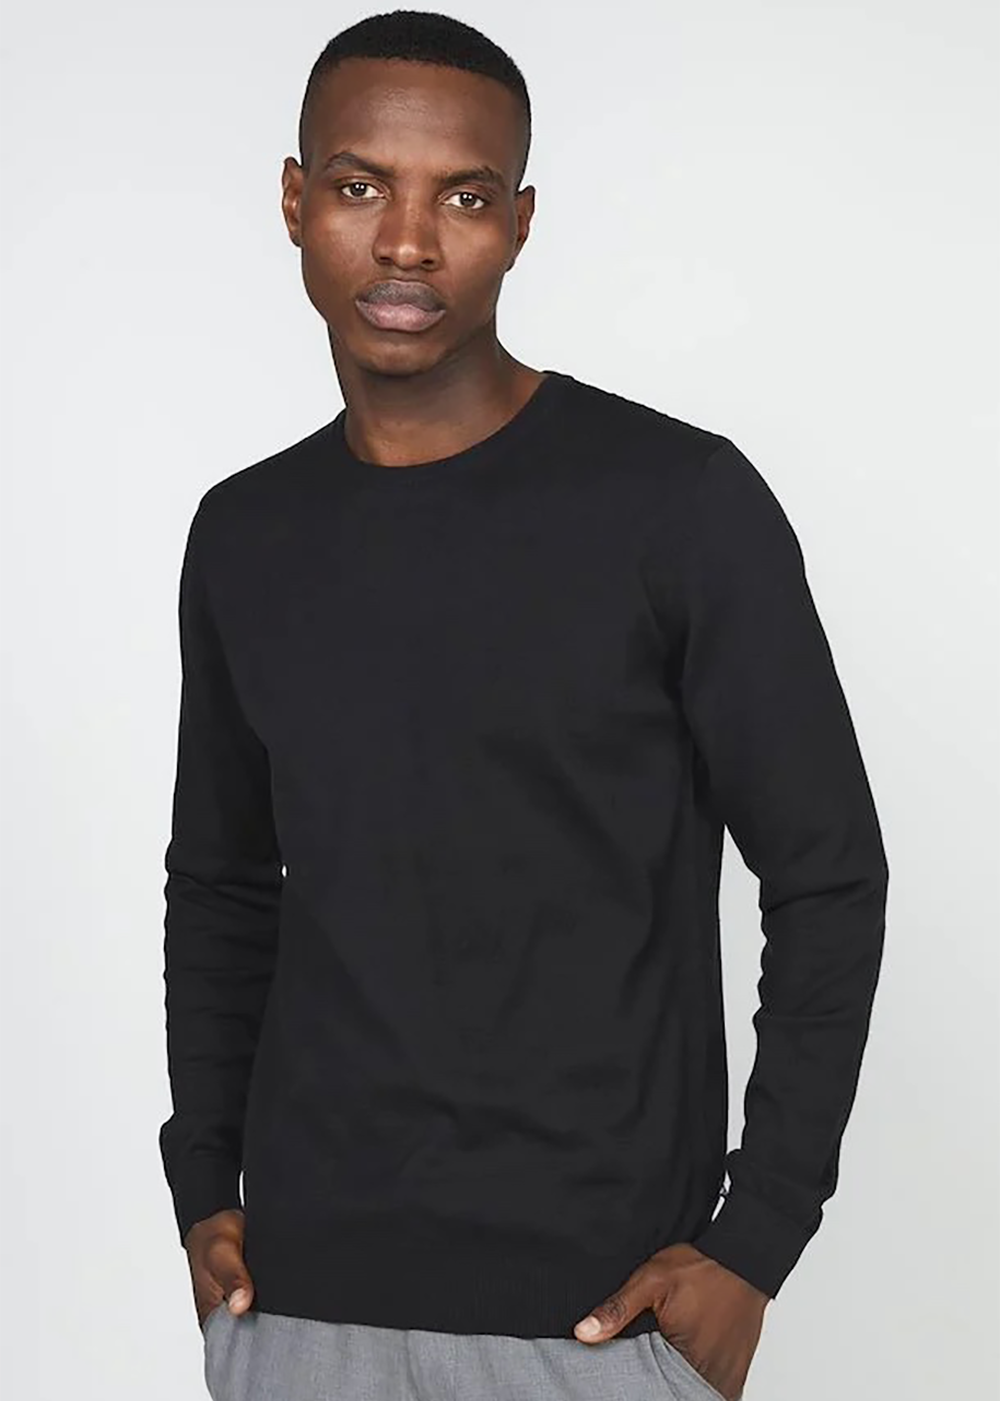 Jones Cotton Sweater - Black - Matinique Canada - Danali - 30206425